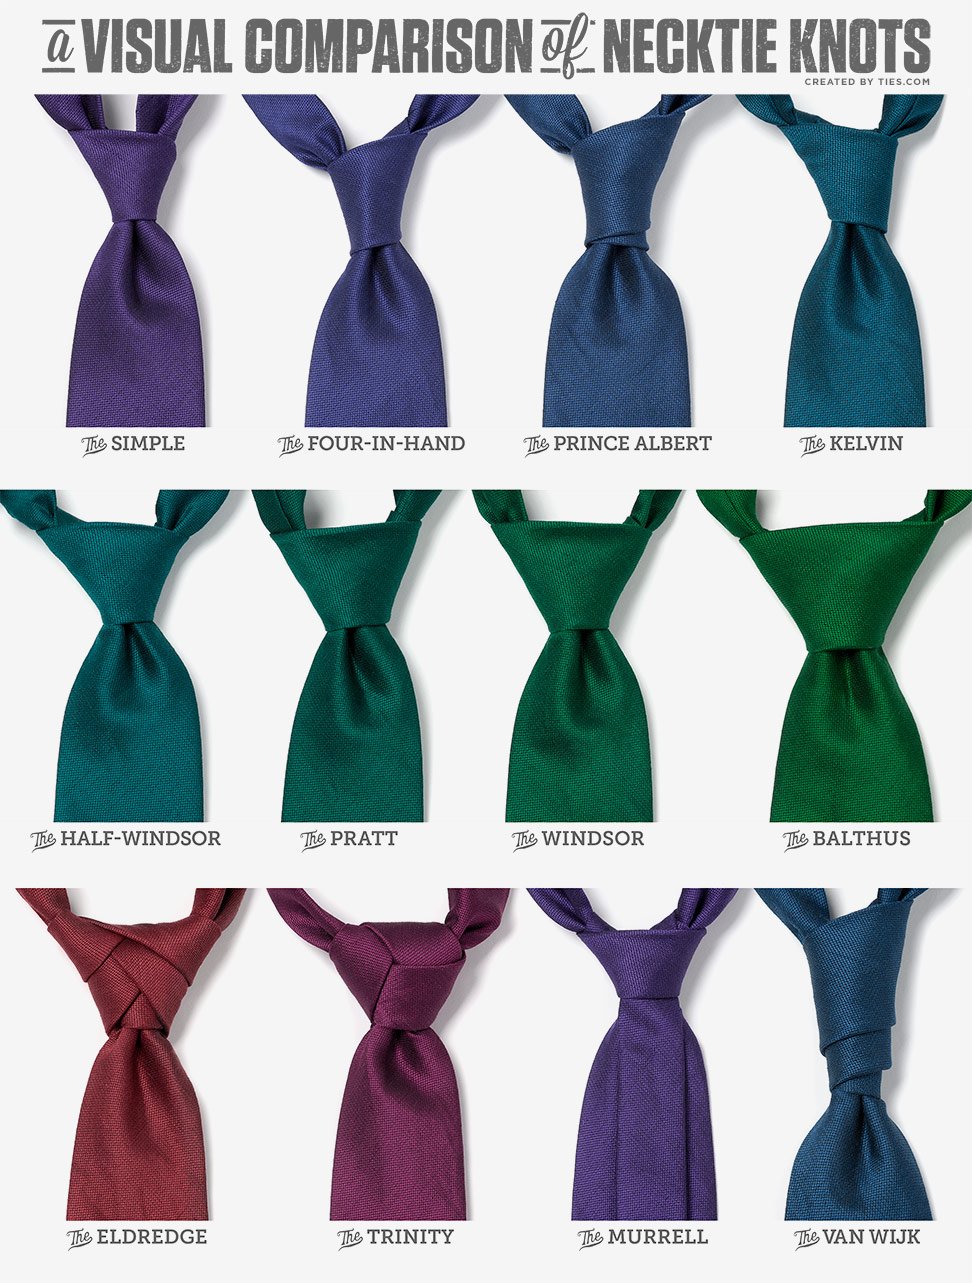 unique ways to tie a tie